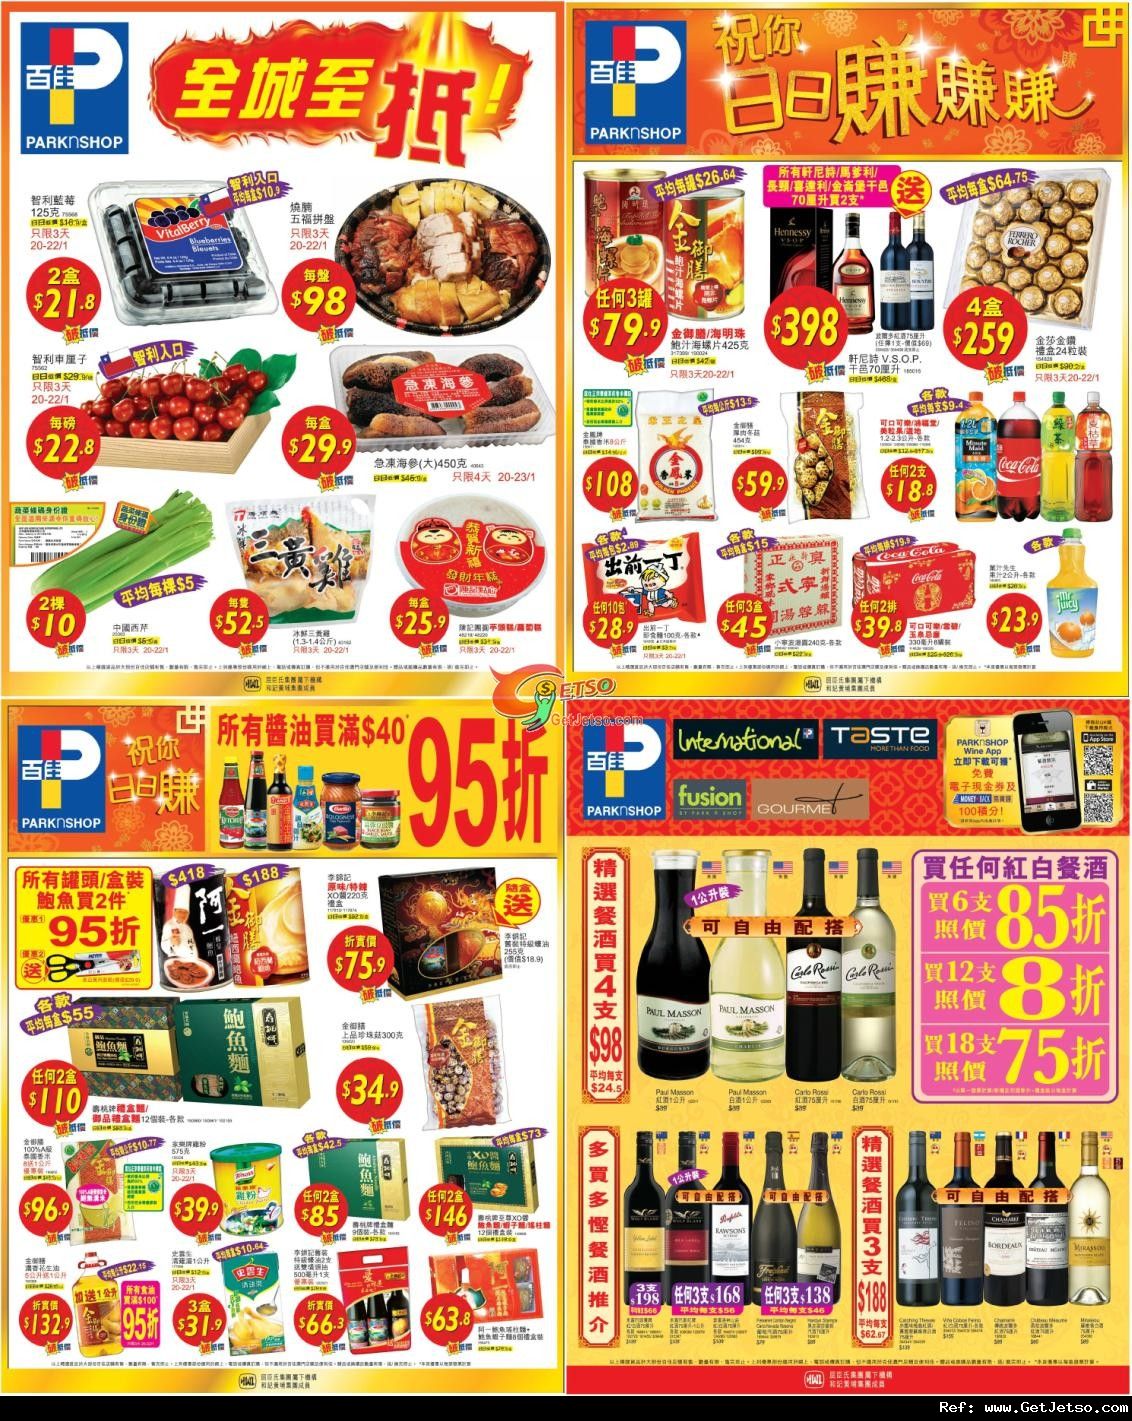 TASTE / 百佳超級市農曆新年賀年禮盒及餐酒購物優惠(至12年1月23日)圖片2